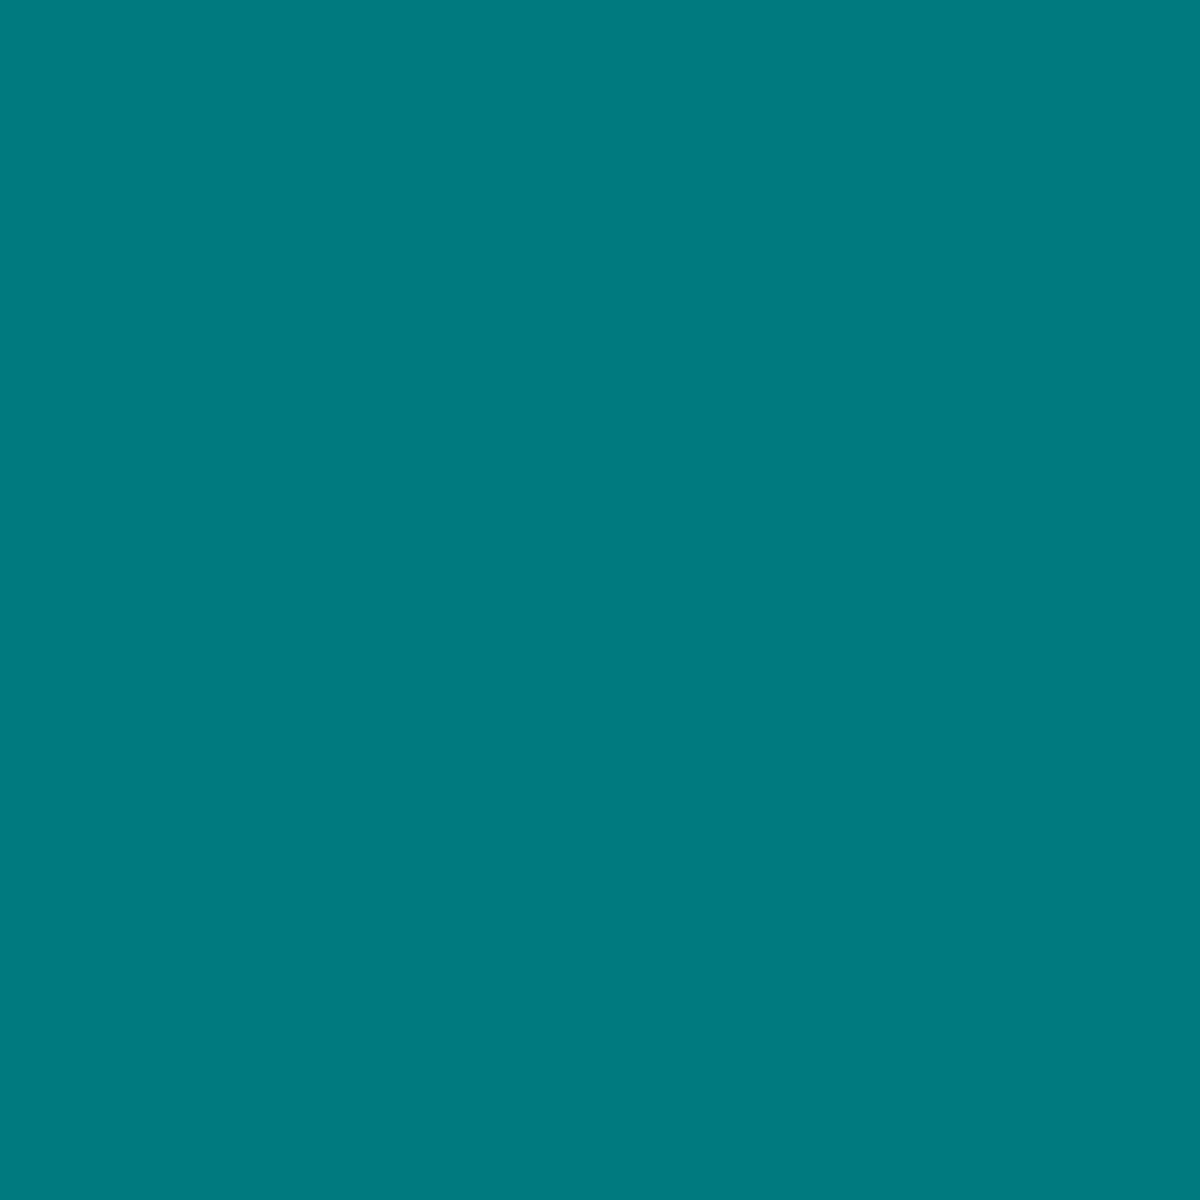 3M Scotchcal colour film 100-603 turquoise 1.22m x 25m